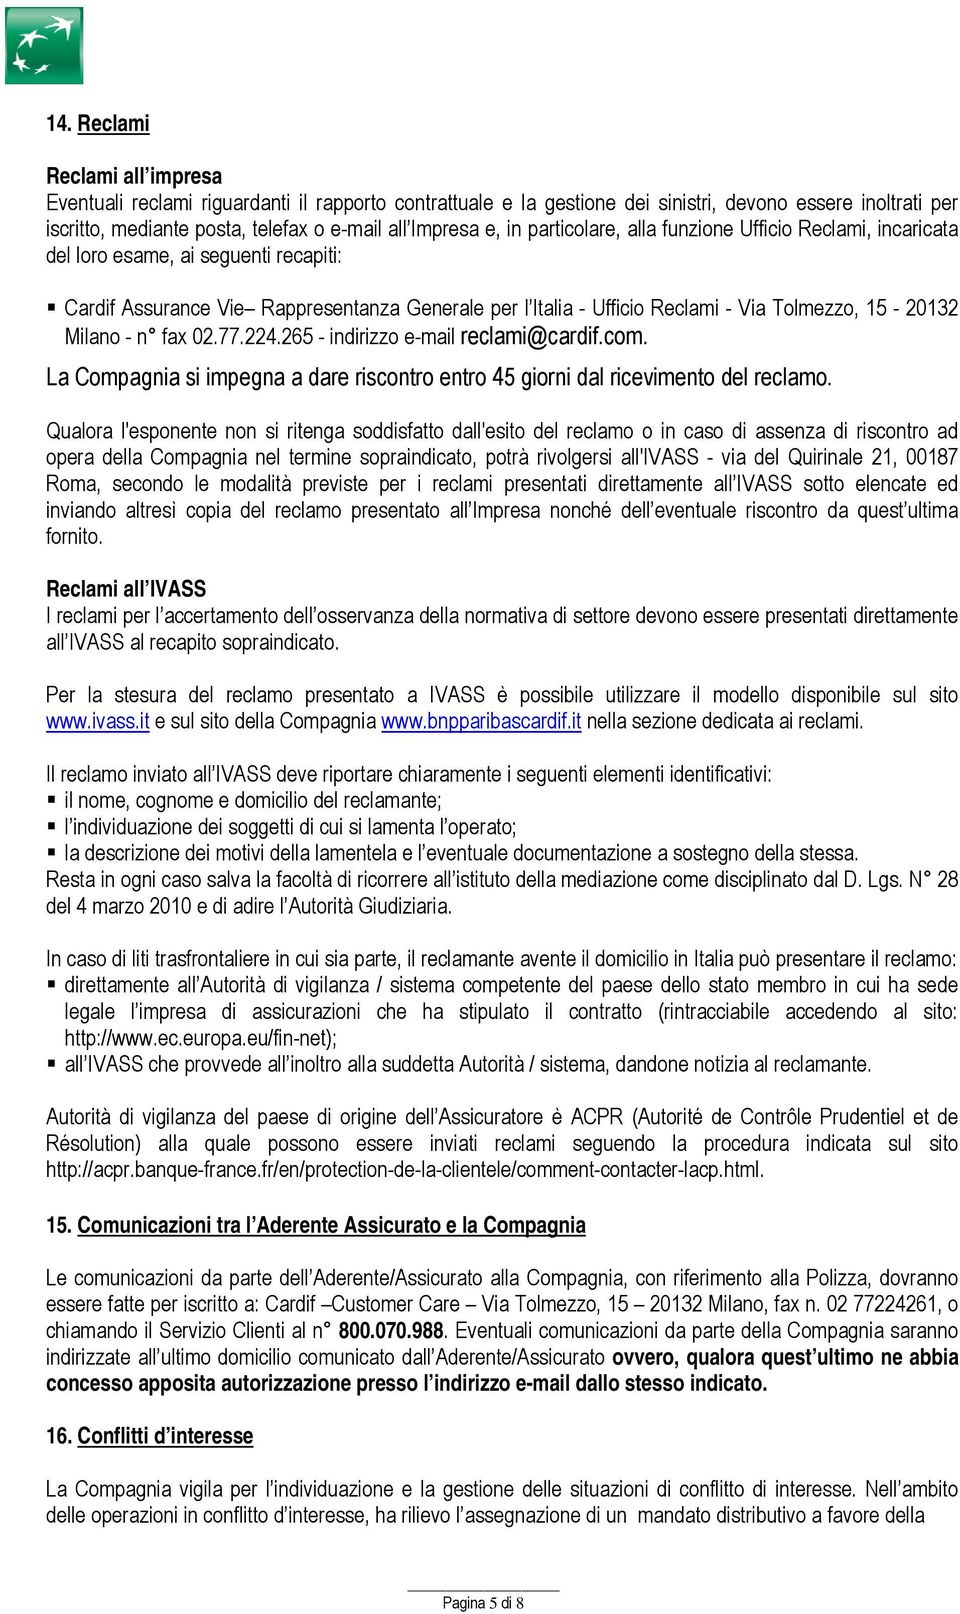 Milano - n fax 02.77.224.265 - indirizzo e-mail reclami@cardif.com. La Compagnia si impegna a dare riscontro entro 45 giorni dal ricevimento del reclamo.